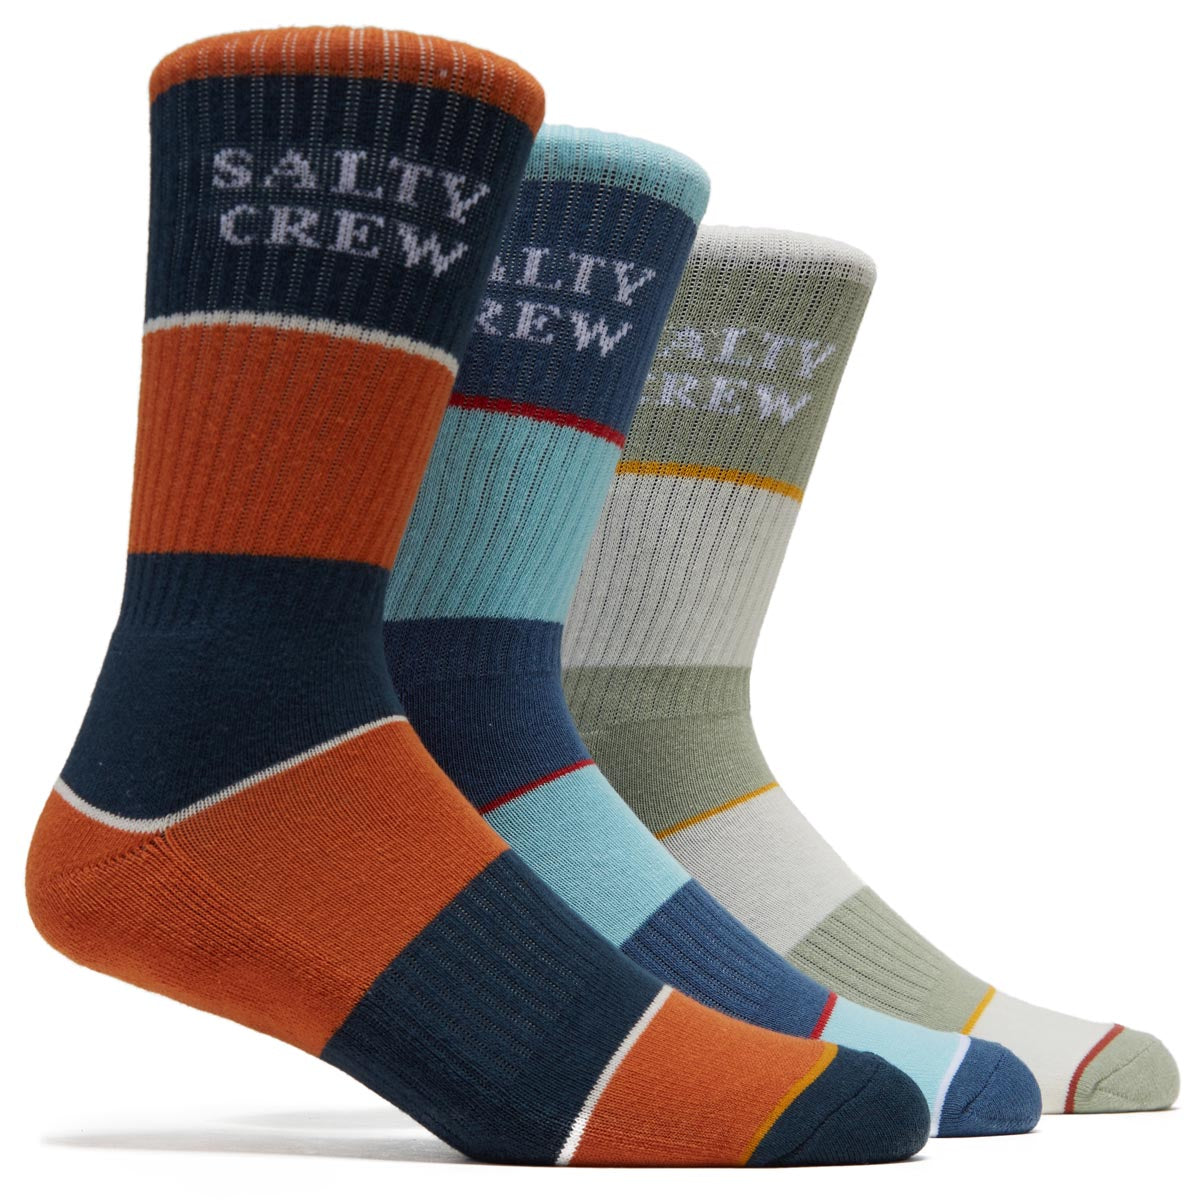 Salty Crew Cutlap 3 Pack of Socks - Multi image 2